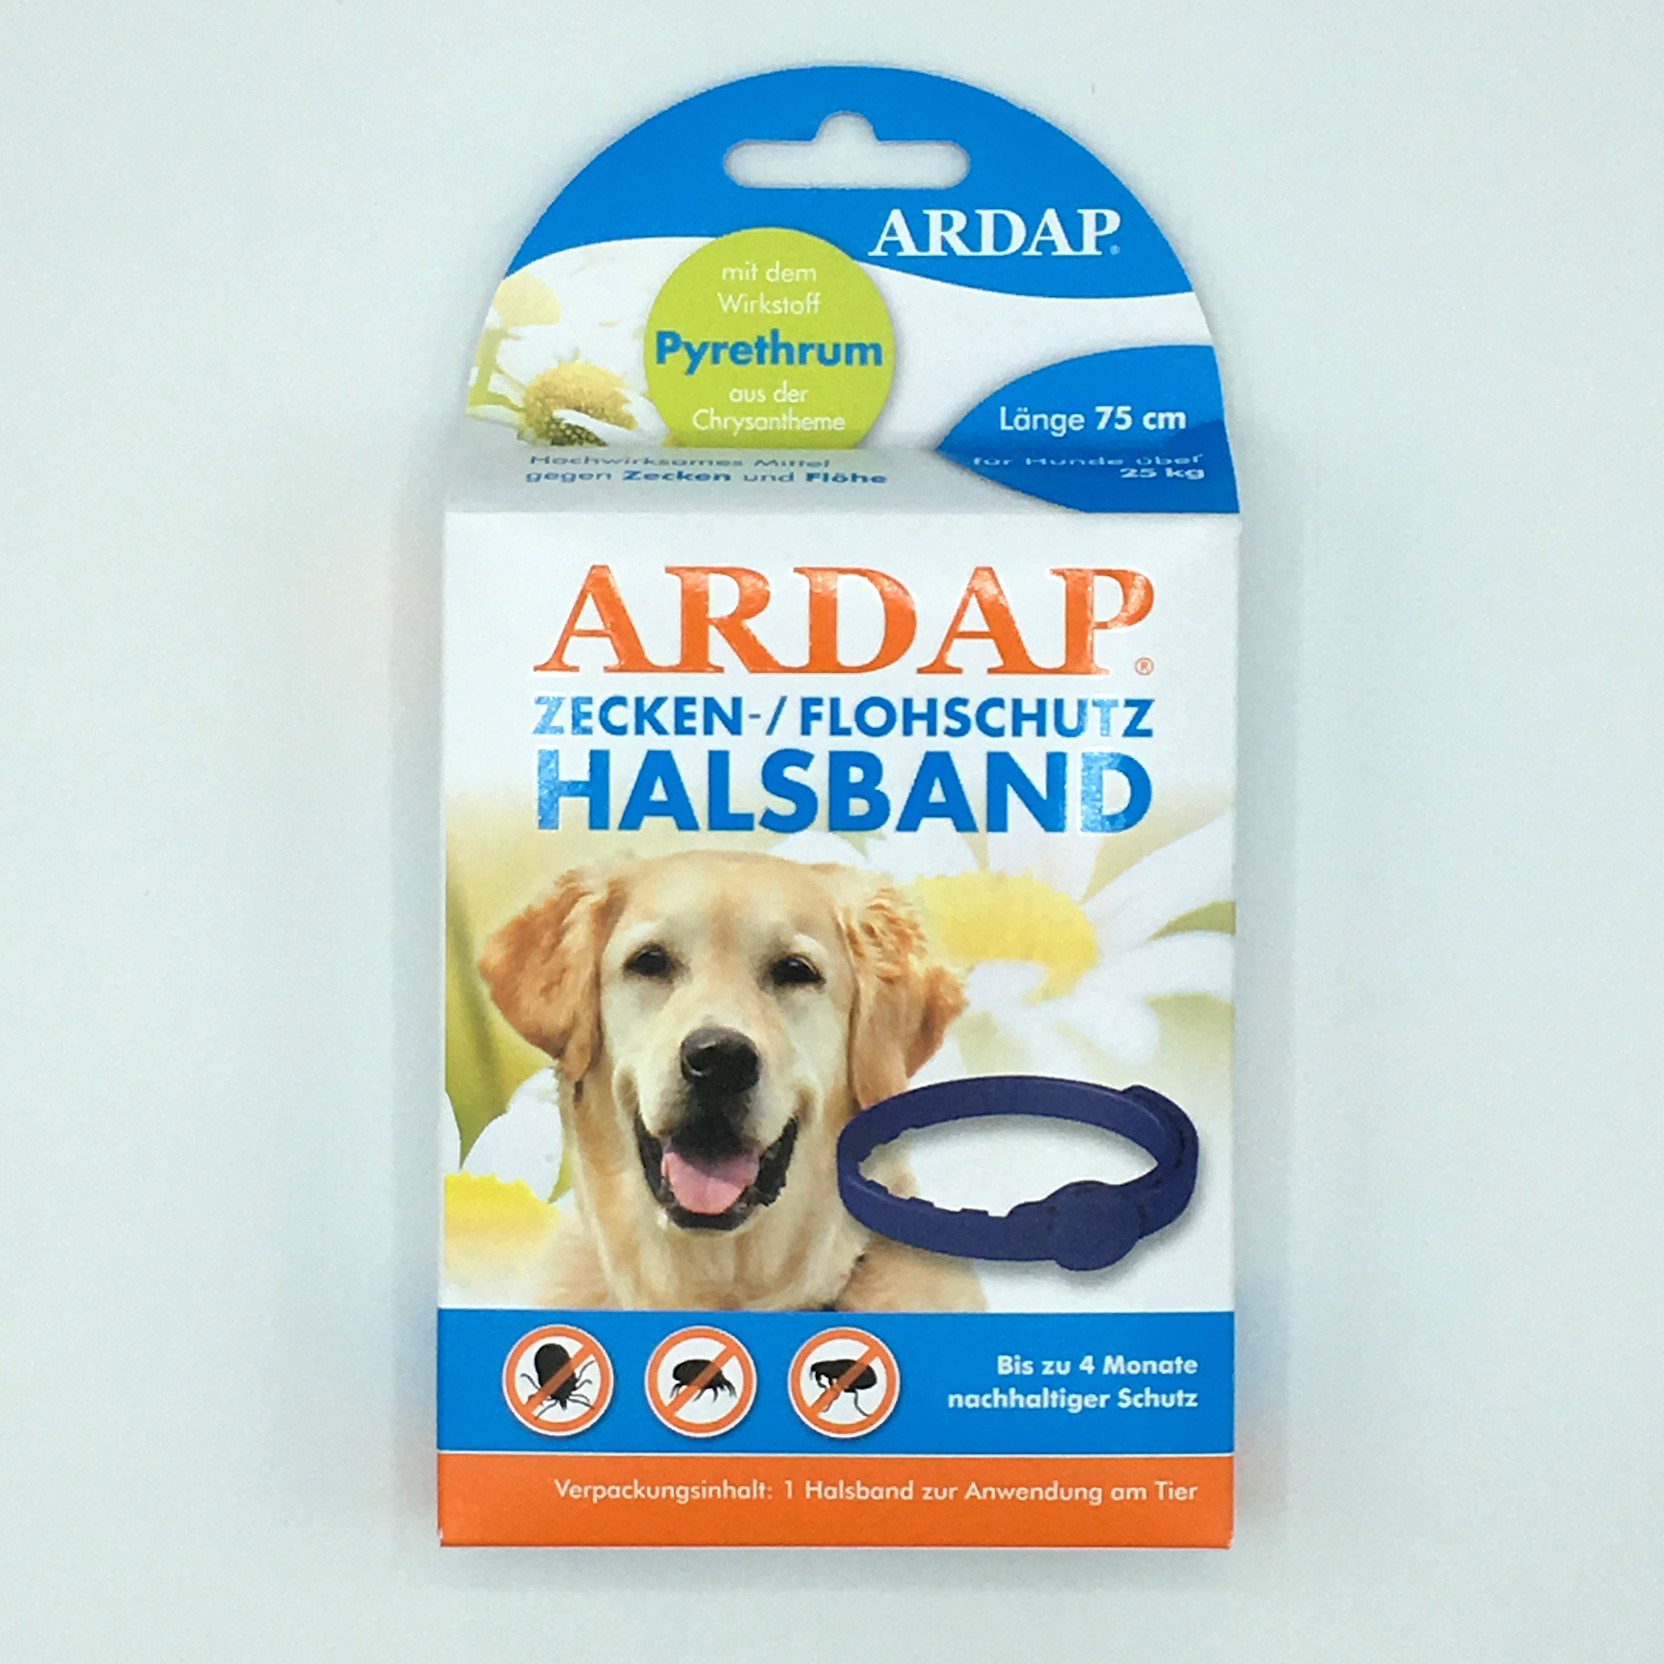 Ardap Zecken/Flohschutz Halsband für Hunde über 25 kg Futtermittel